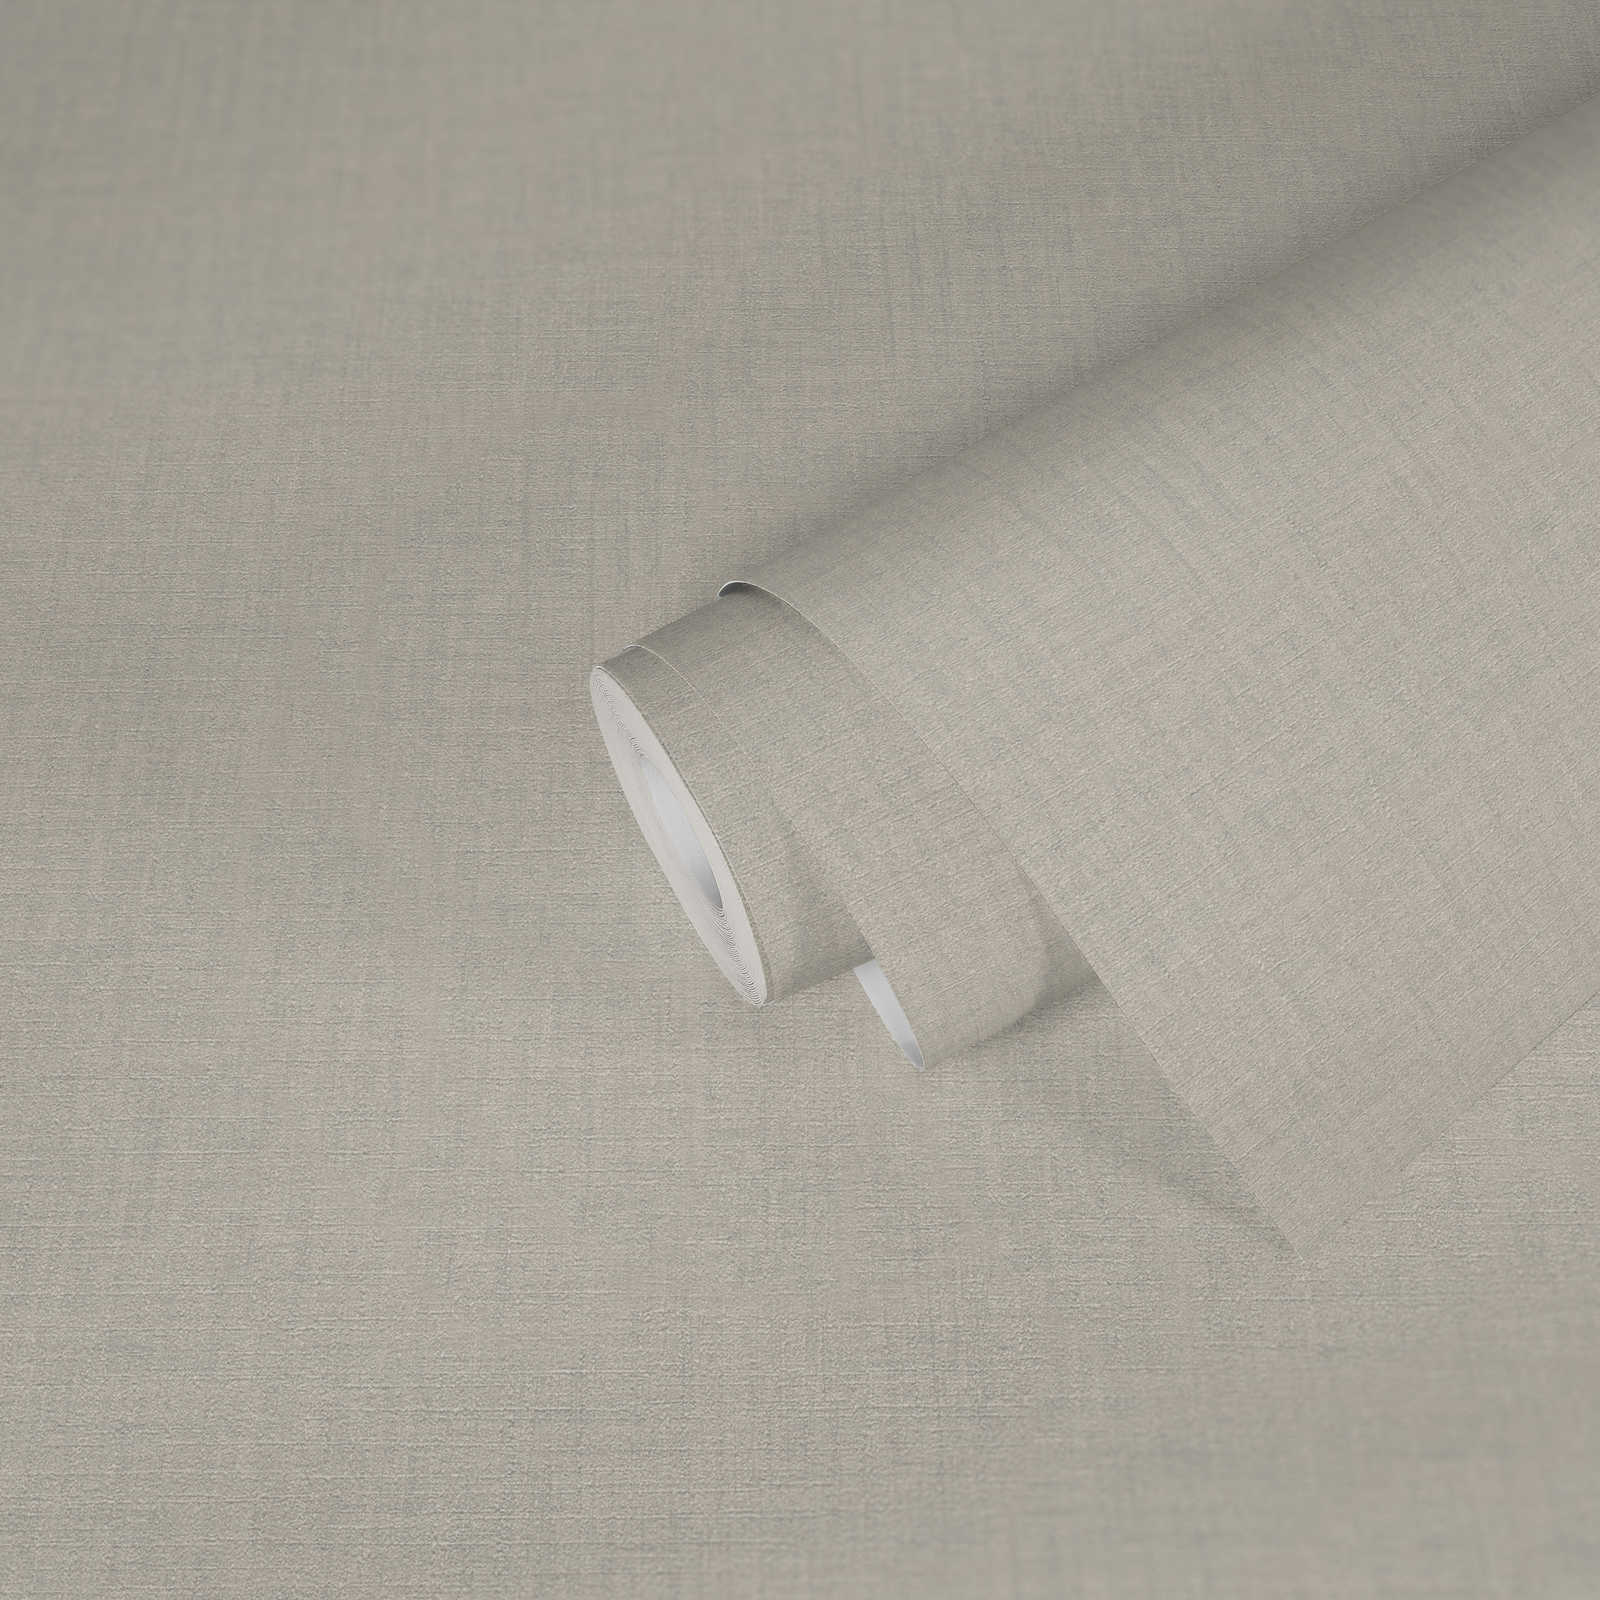             VERSACE plain wallpaper - white mottled - cream, white, grey
        